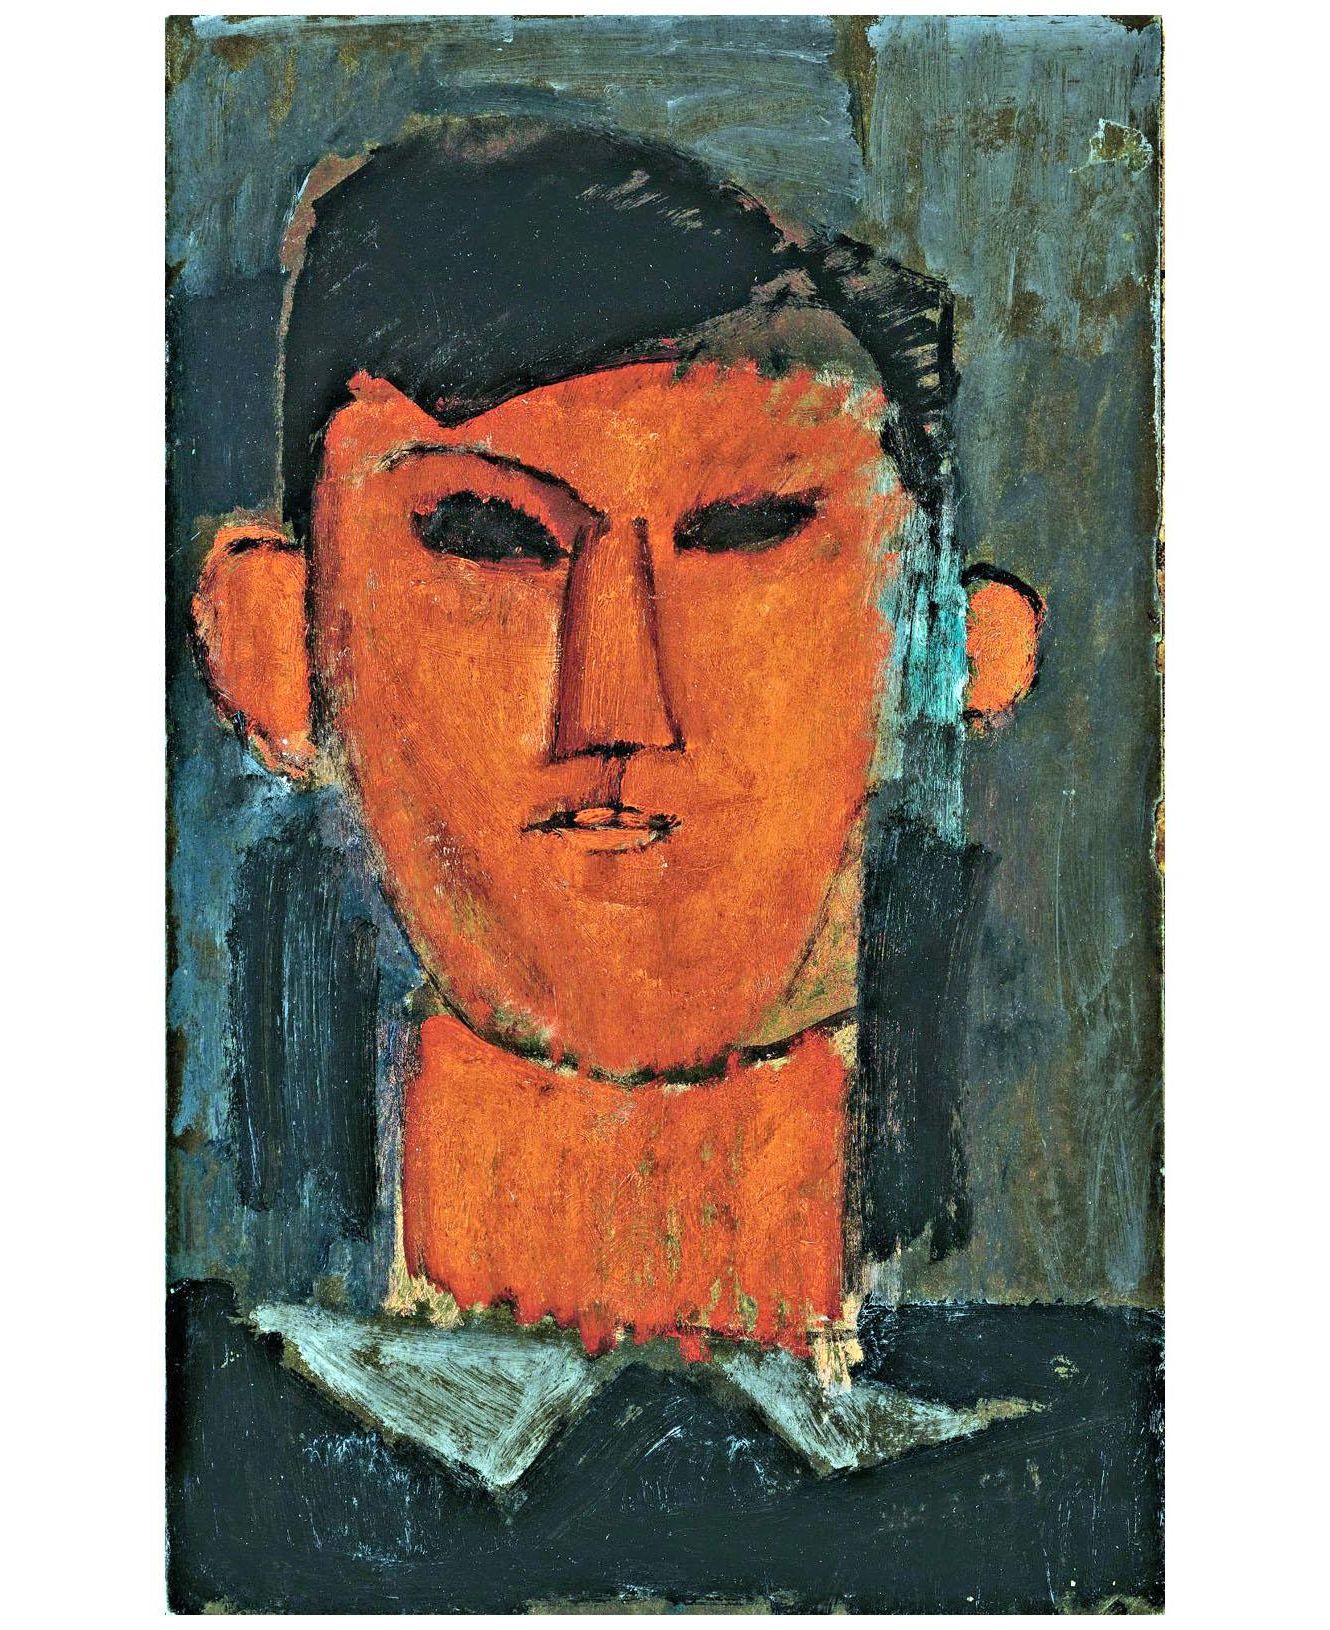 Amedeo Modigliani. Portrait de Picasso. 1915. Private collection